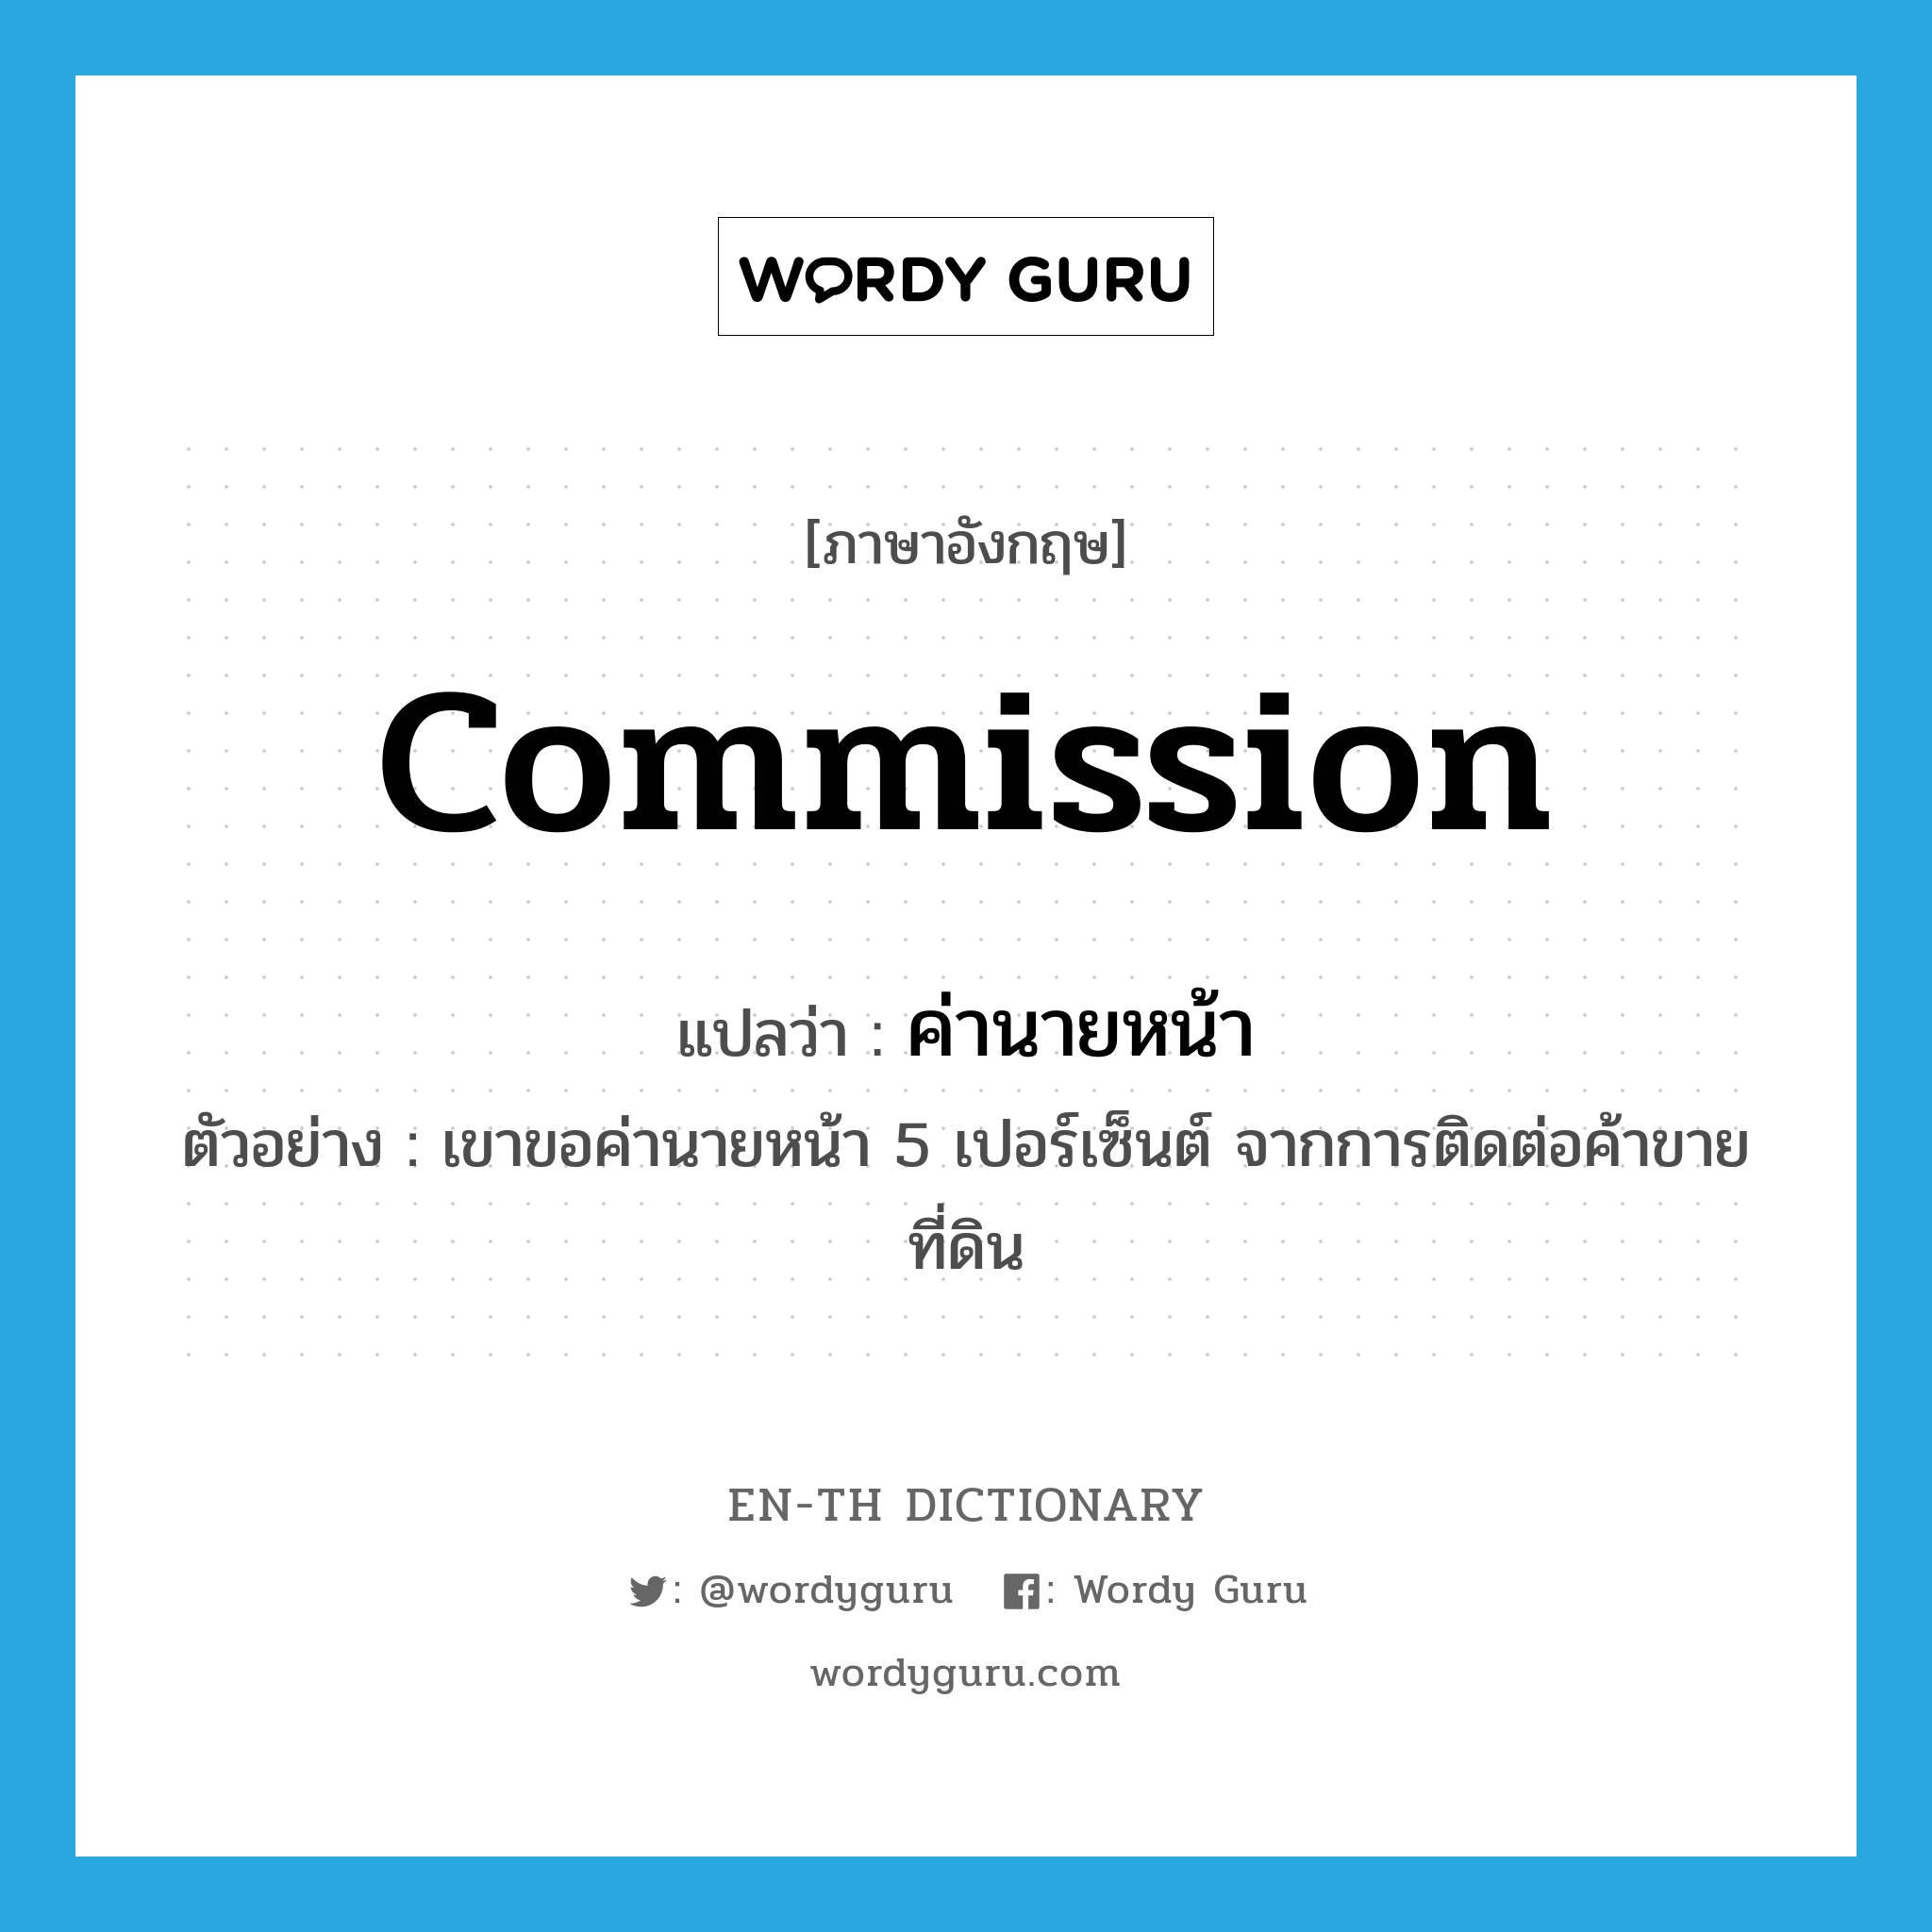 commission แปลว่า?, คำศัพท์ภาษาอังกฤษ commission แปลว่า ค่านายหน้า ประเภท N ตัวอย่าง เขาขอค่านายหน้า 5 เปอร์เซ็นต์ จากการติดต่อค้าขายที่ดิน หมวด N